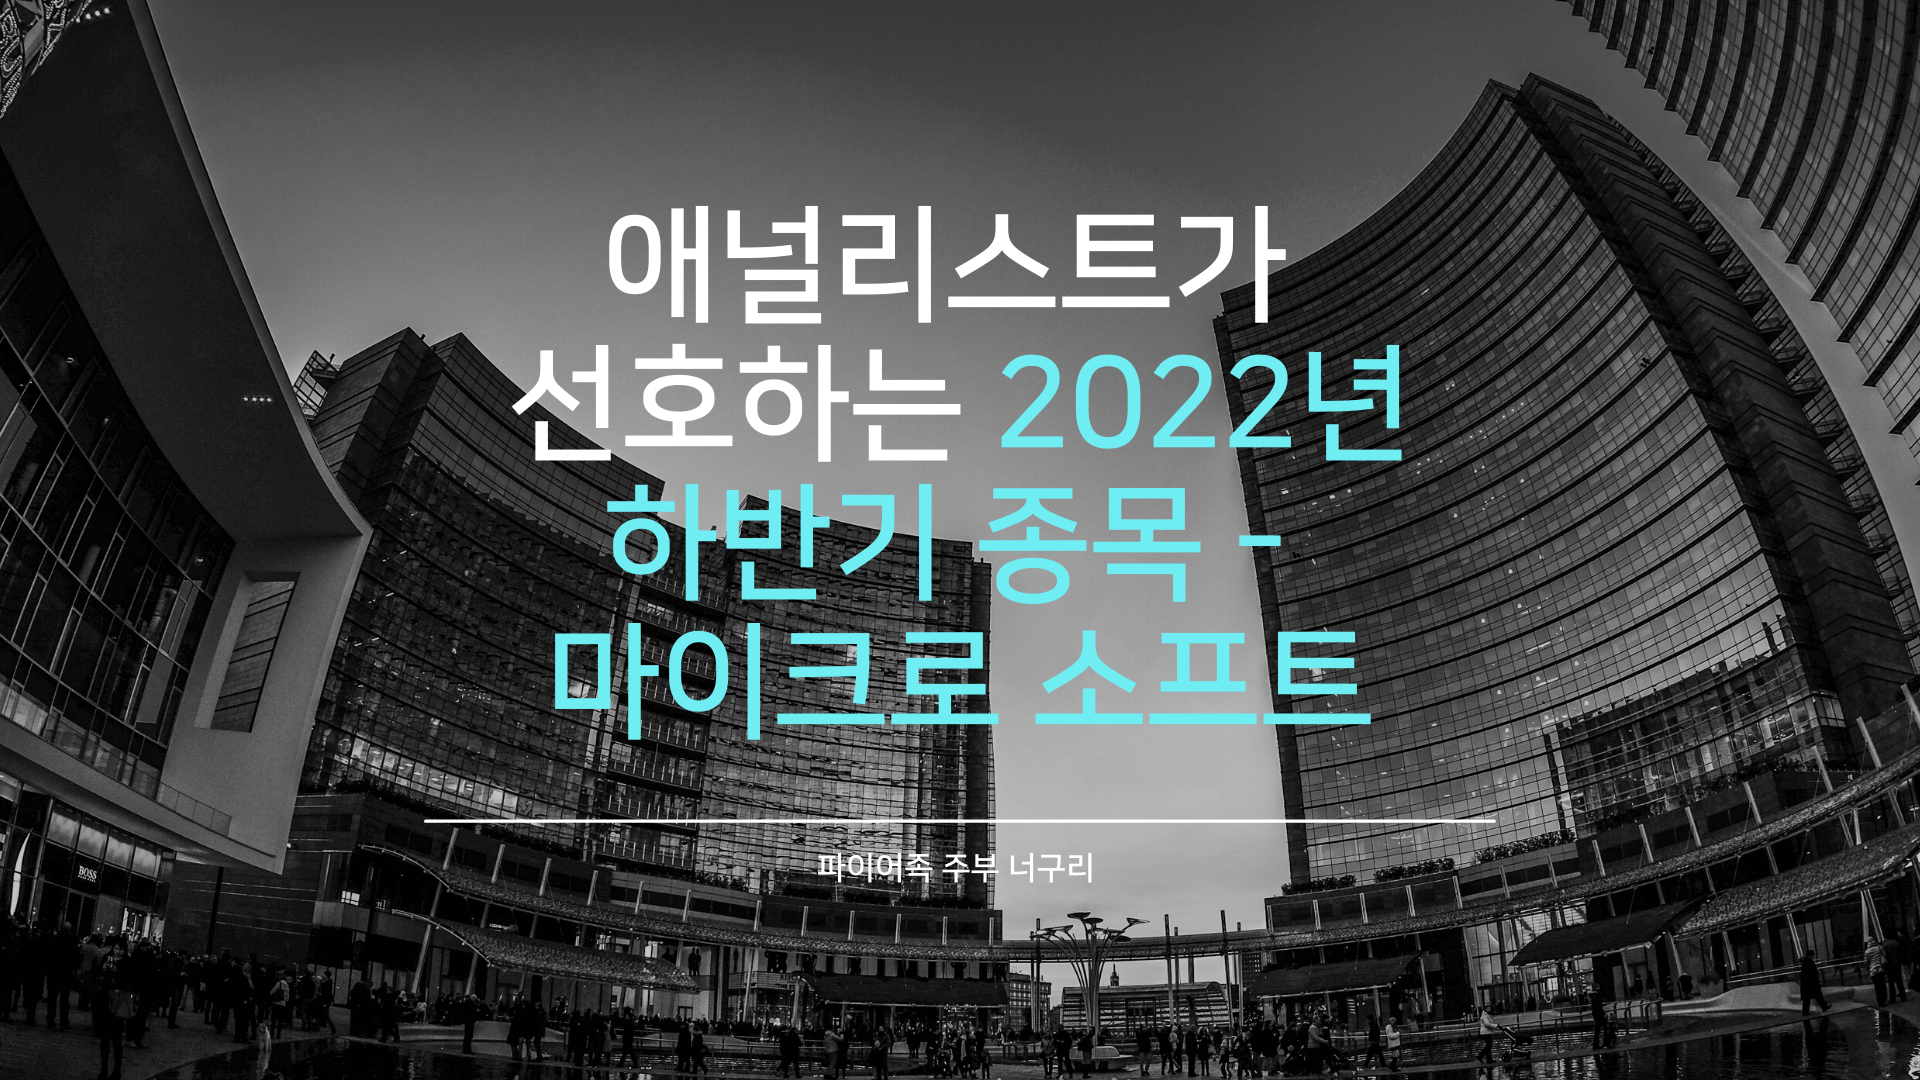 애널리스트가 선호하는 2022년 하반기 종목 - 마이크로소프트